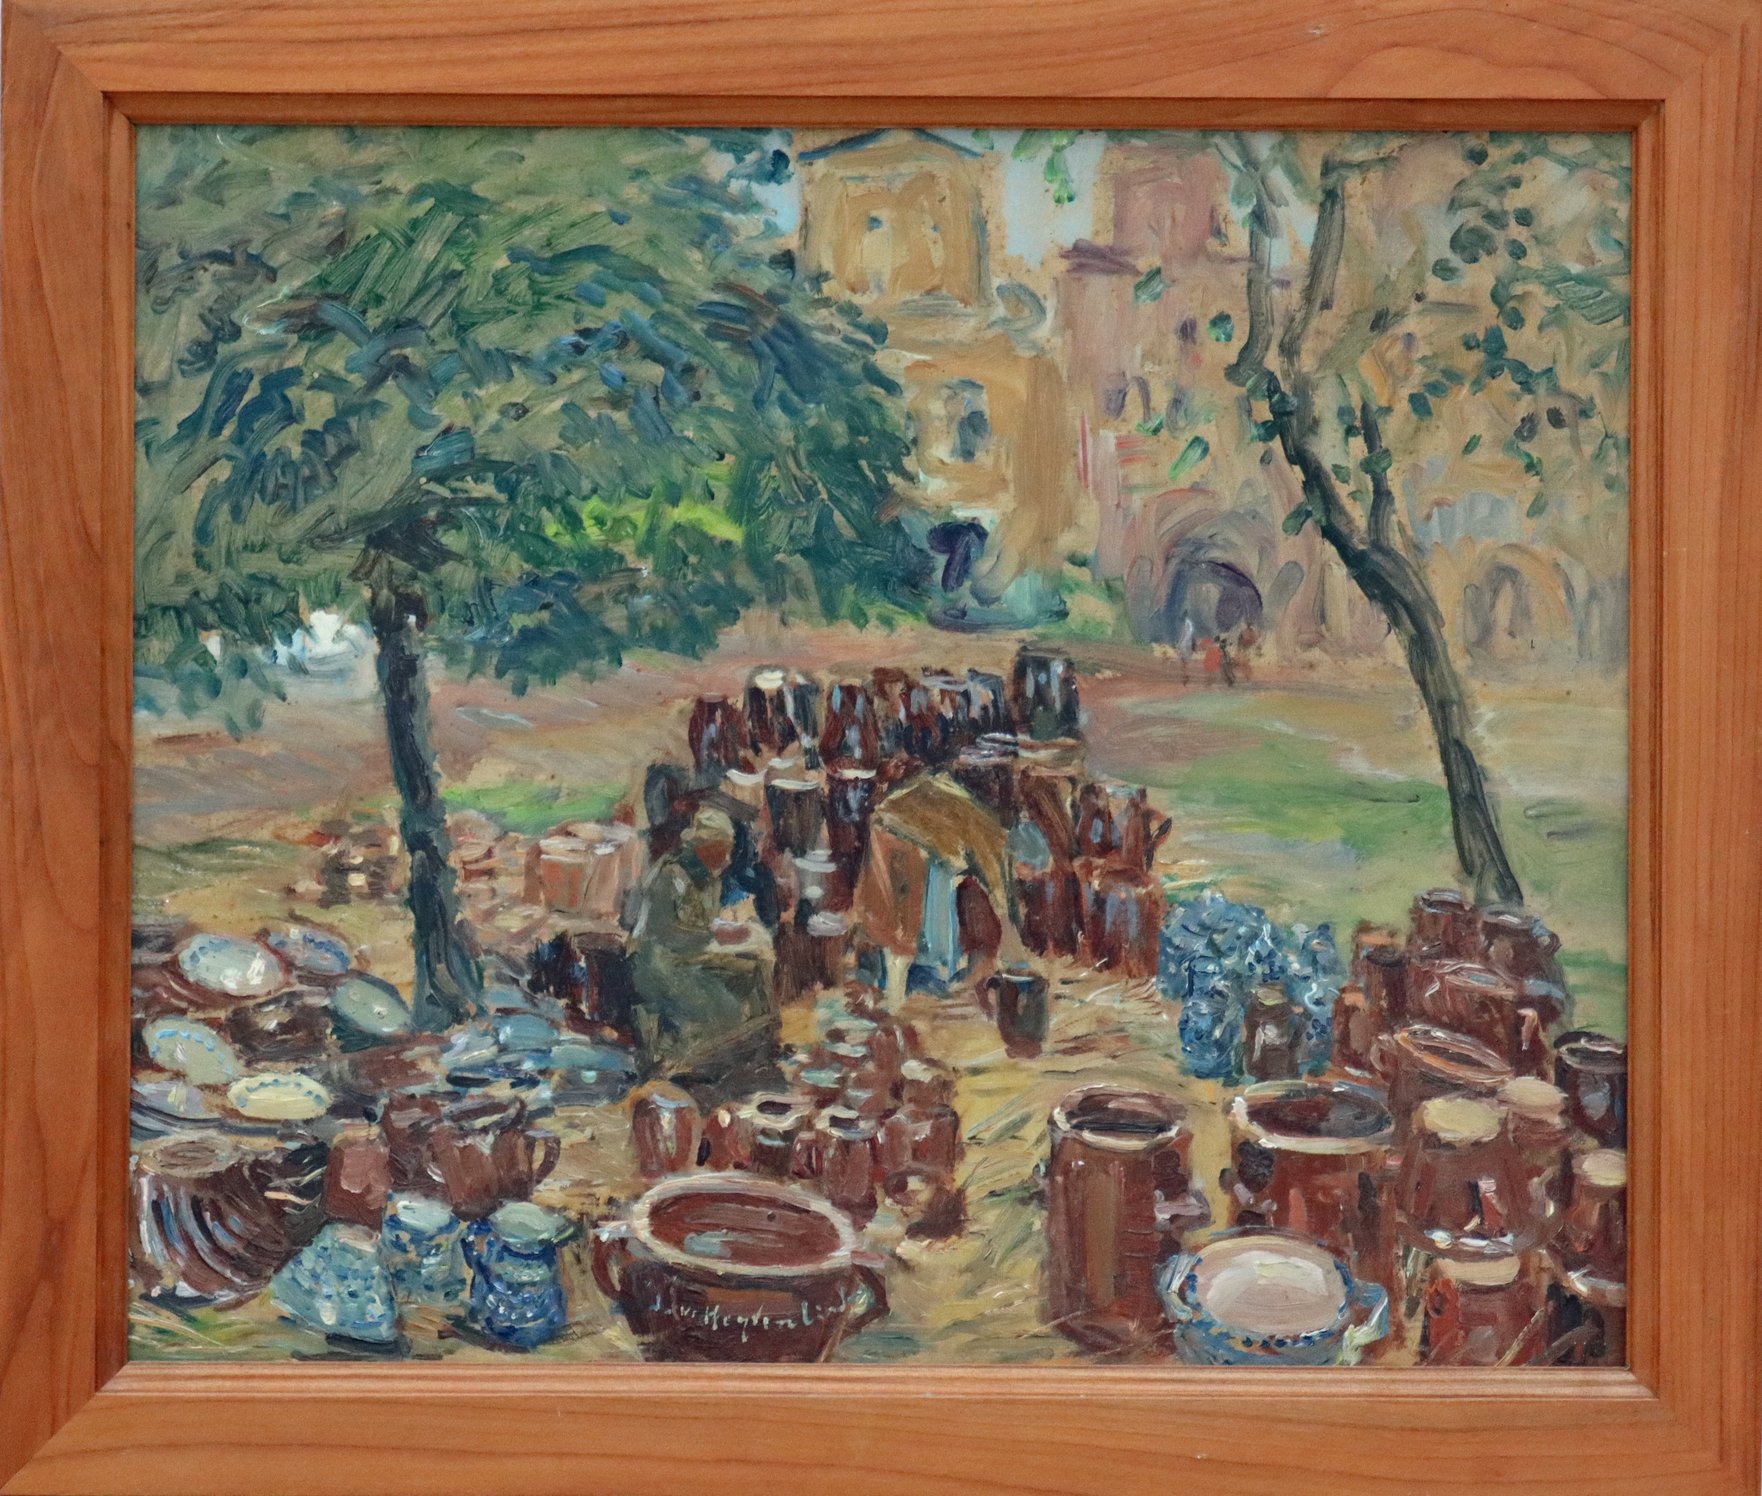 Ilse von Heyden-Linden, Bunzlauer Töpfermarkt, Öl auf Hartfaser, beschnitten, um 1931/32 (1934)